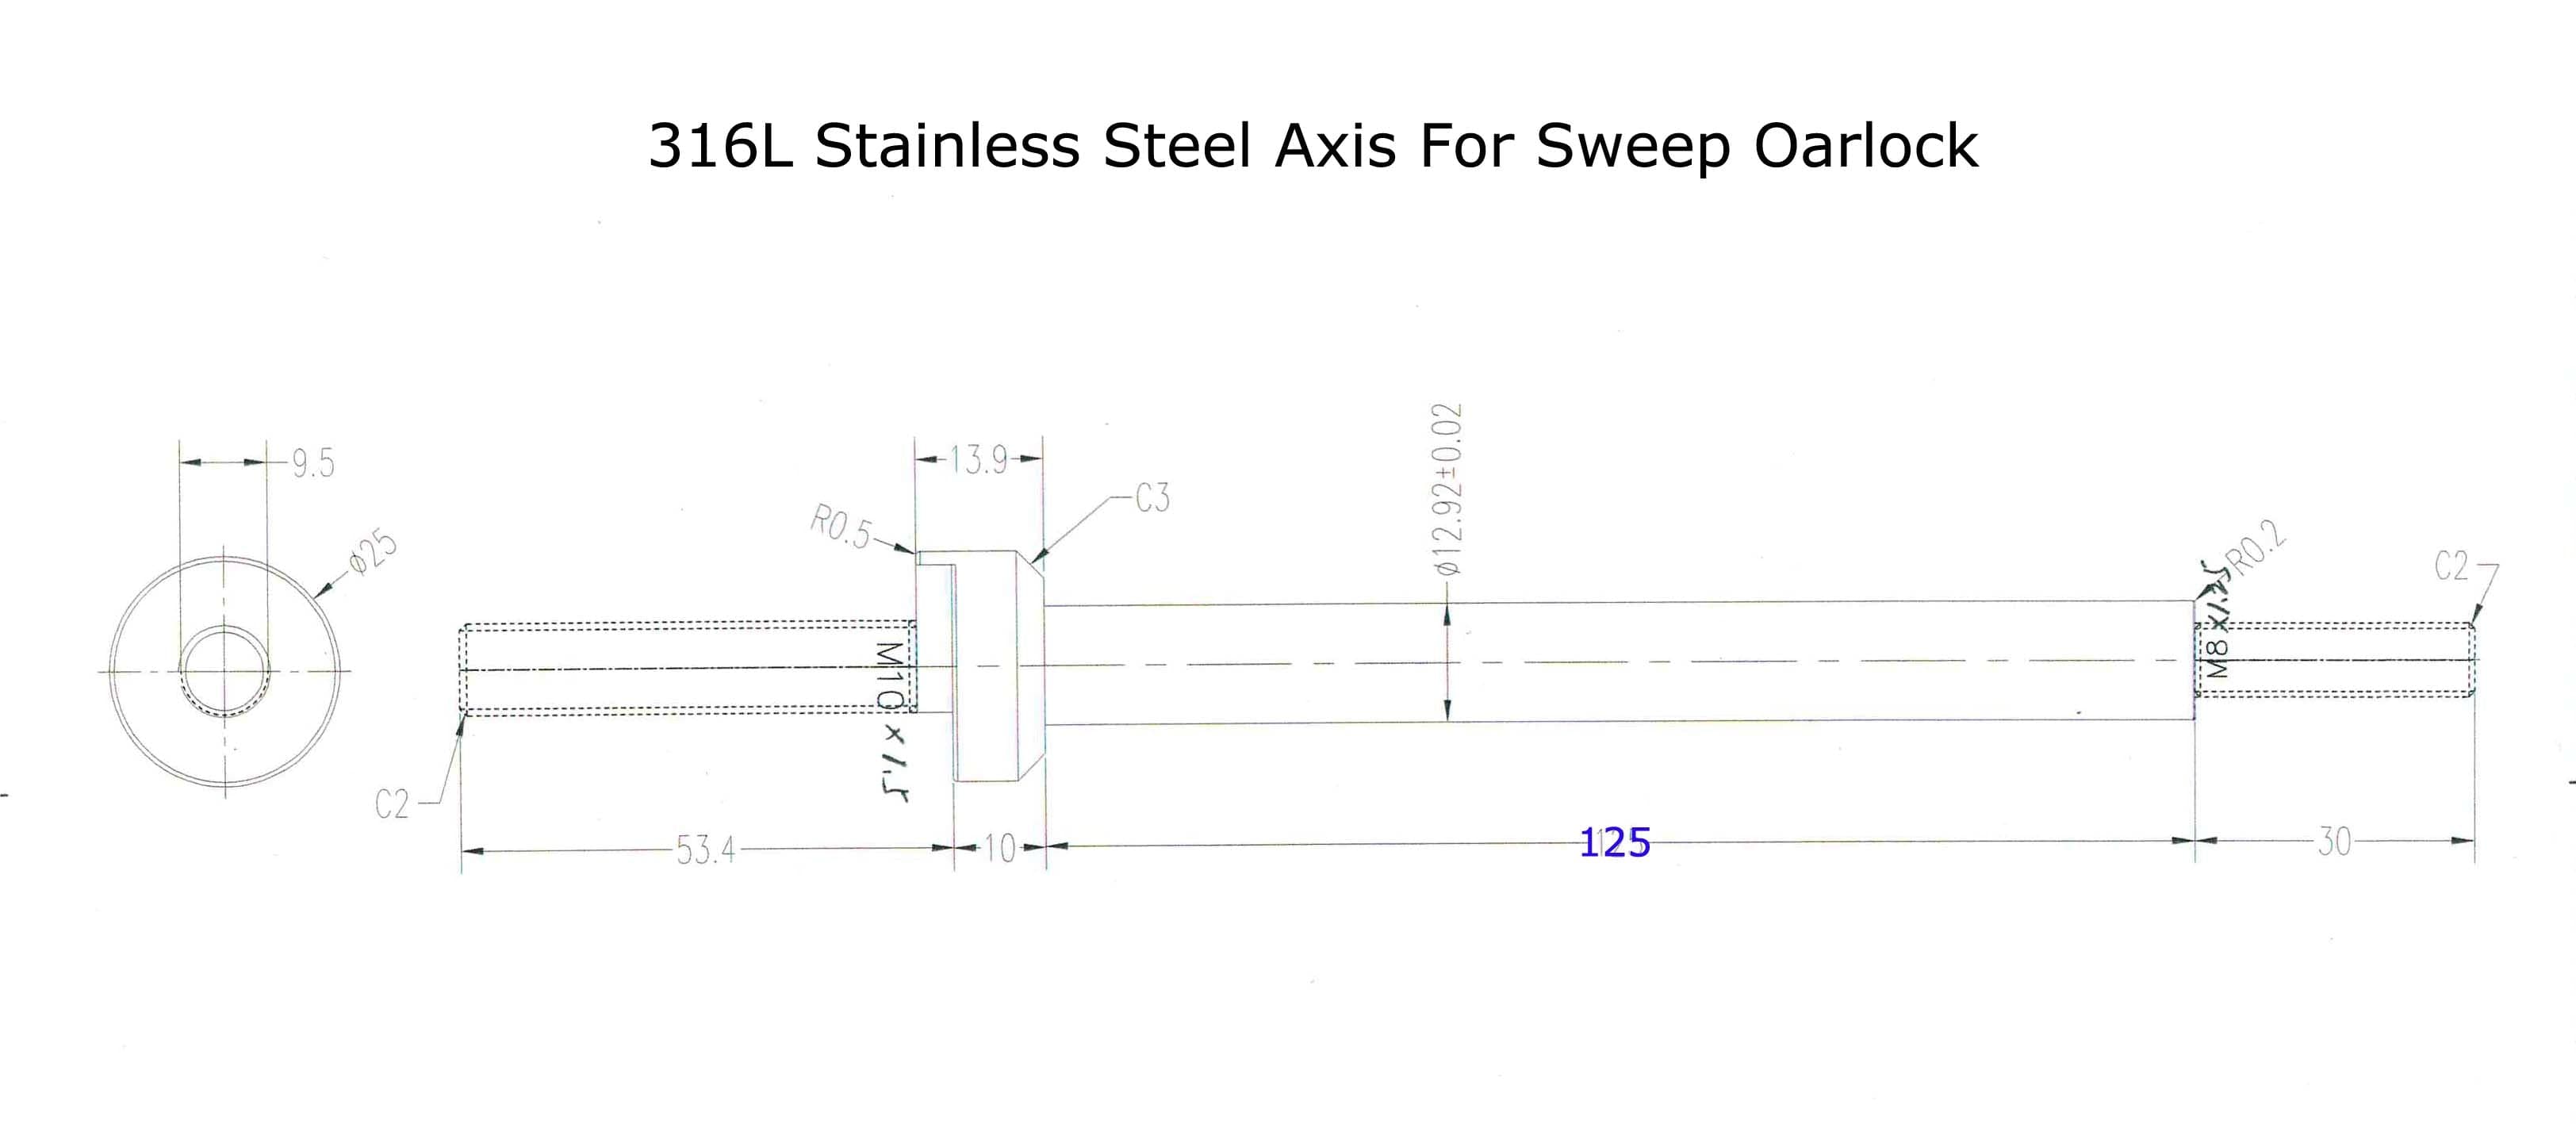 Pasador de acero inoxidable ZJ 316L para remos de remo/remos de barrido (2 unids/set) [envío gratis]